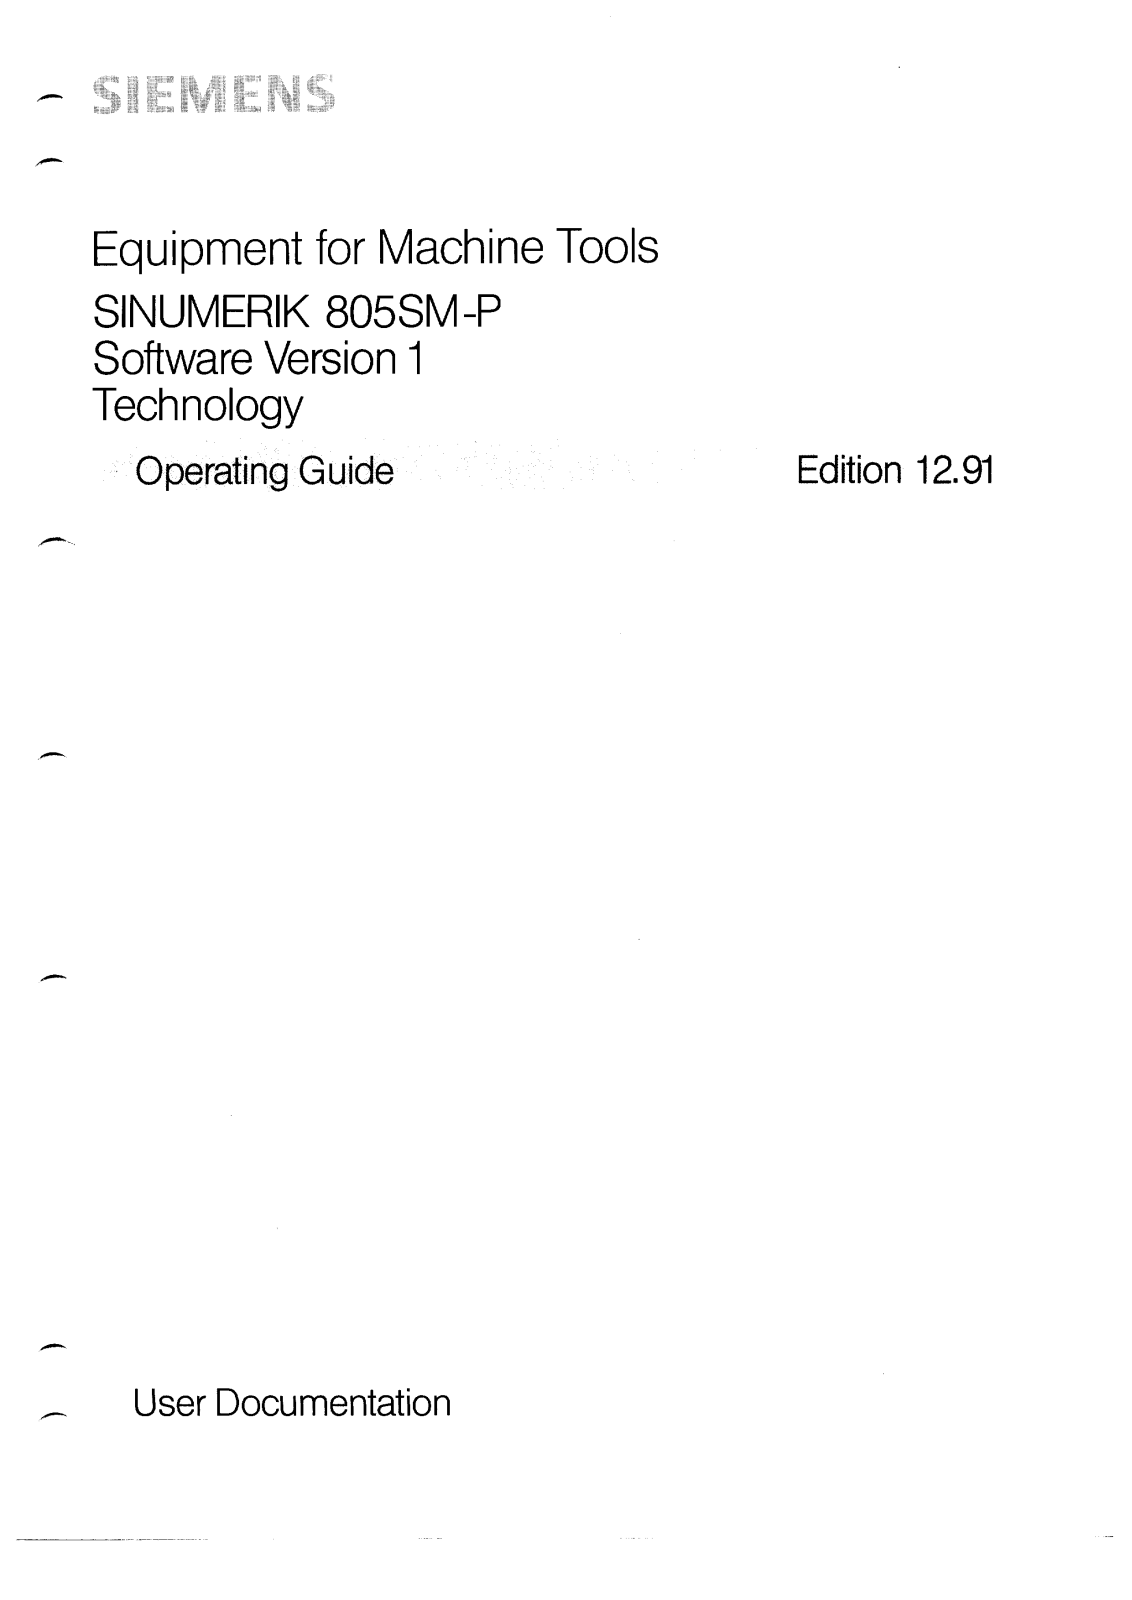 siemens 805SM-P User Manual